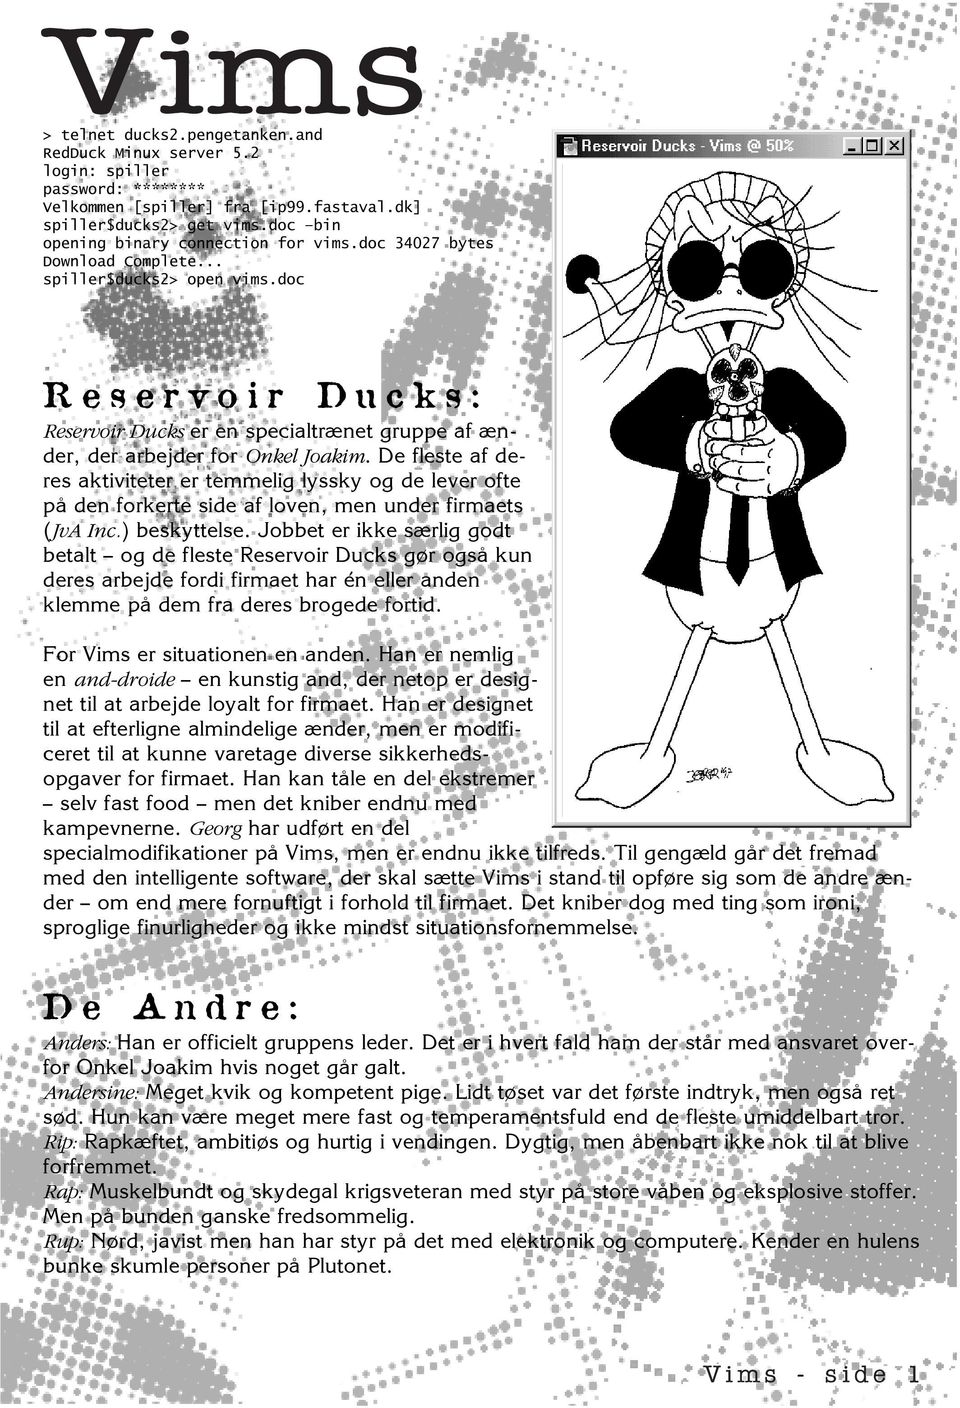 doc Reservoir Ducks: Reservoir Ducks er en specialtrænet gruppe af ænder, der arbejder for Onkel Joakim.